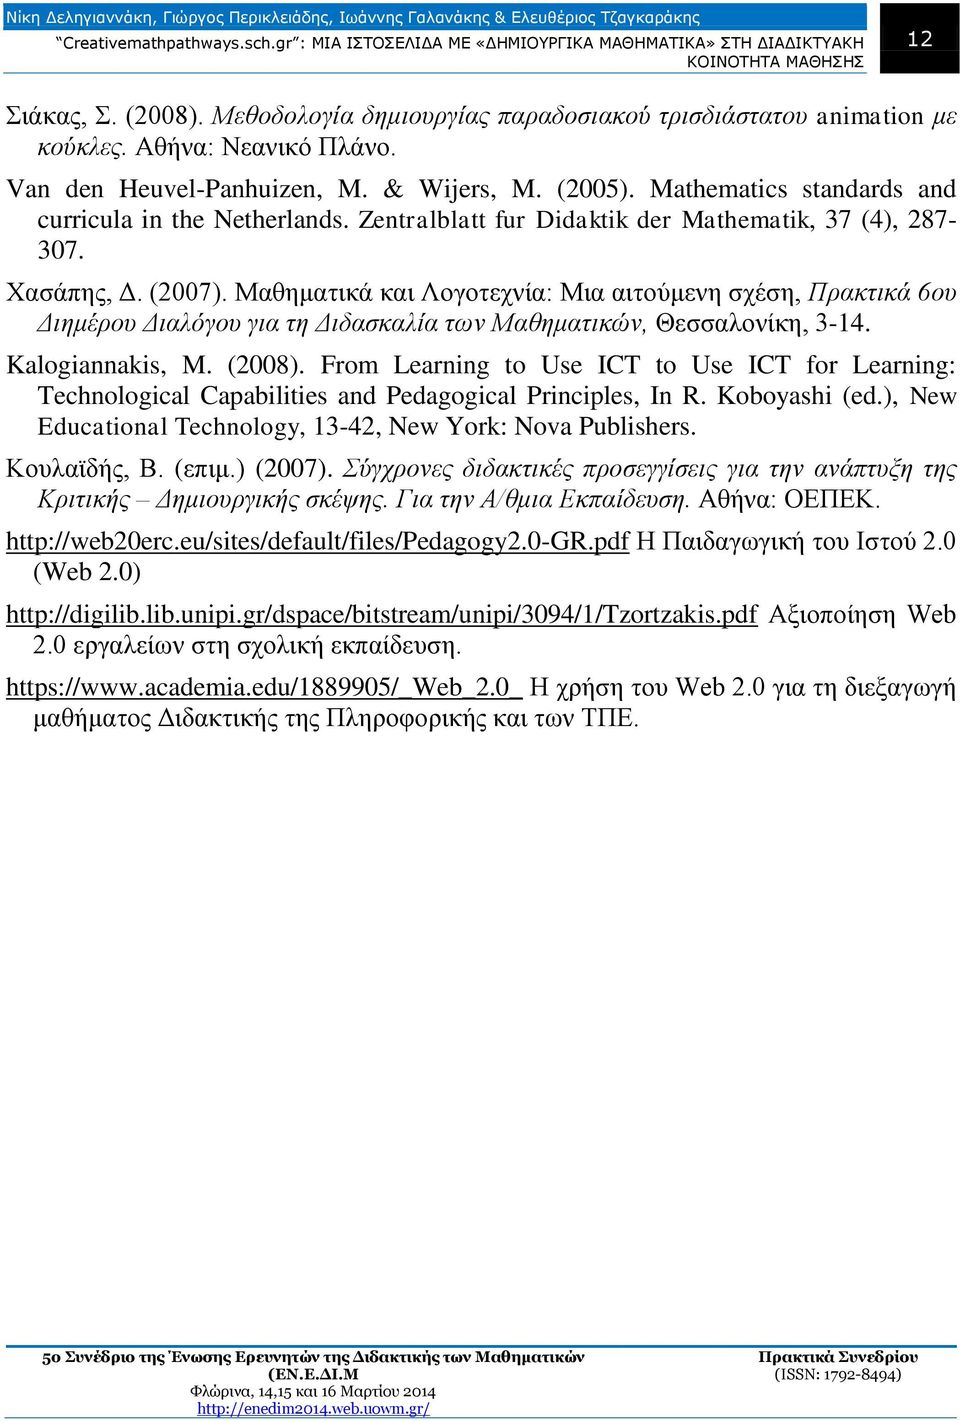 Μαθηματικά και Λογοτεχνία: Μια αιτούμενη σχέση, Πρακτικά 6ου Διημέρου Διαλόγου για τη Διδασκαλία των Μαθηματικών, Θεσσαλονίκη, 3-14. Kalogiannakis, M. (2008).